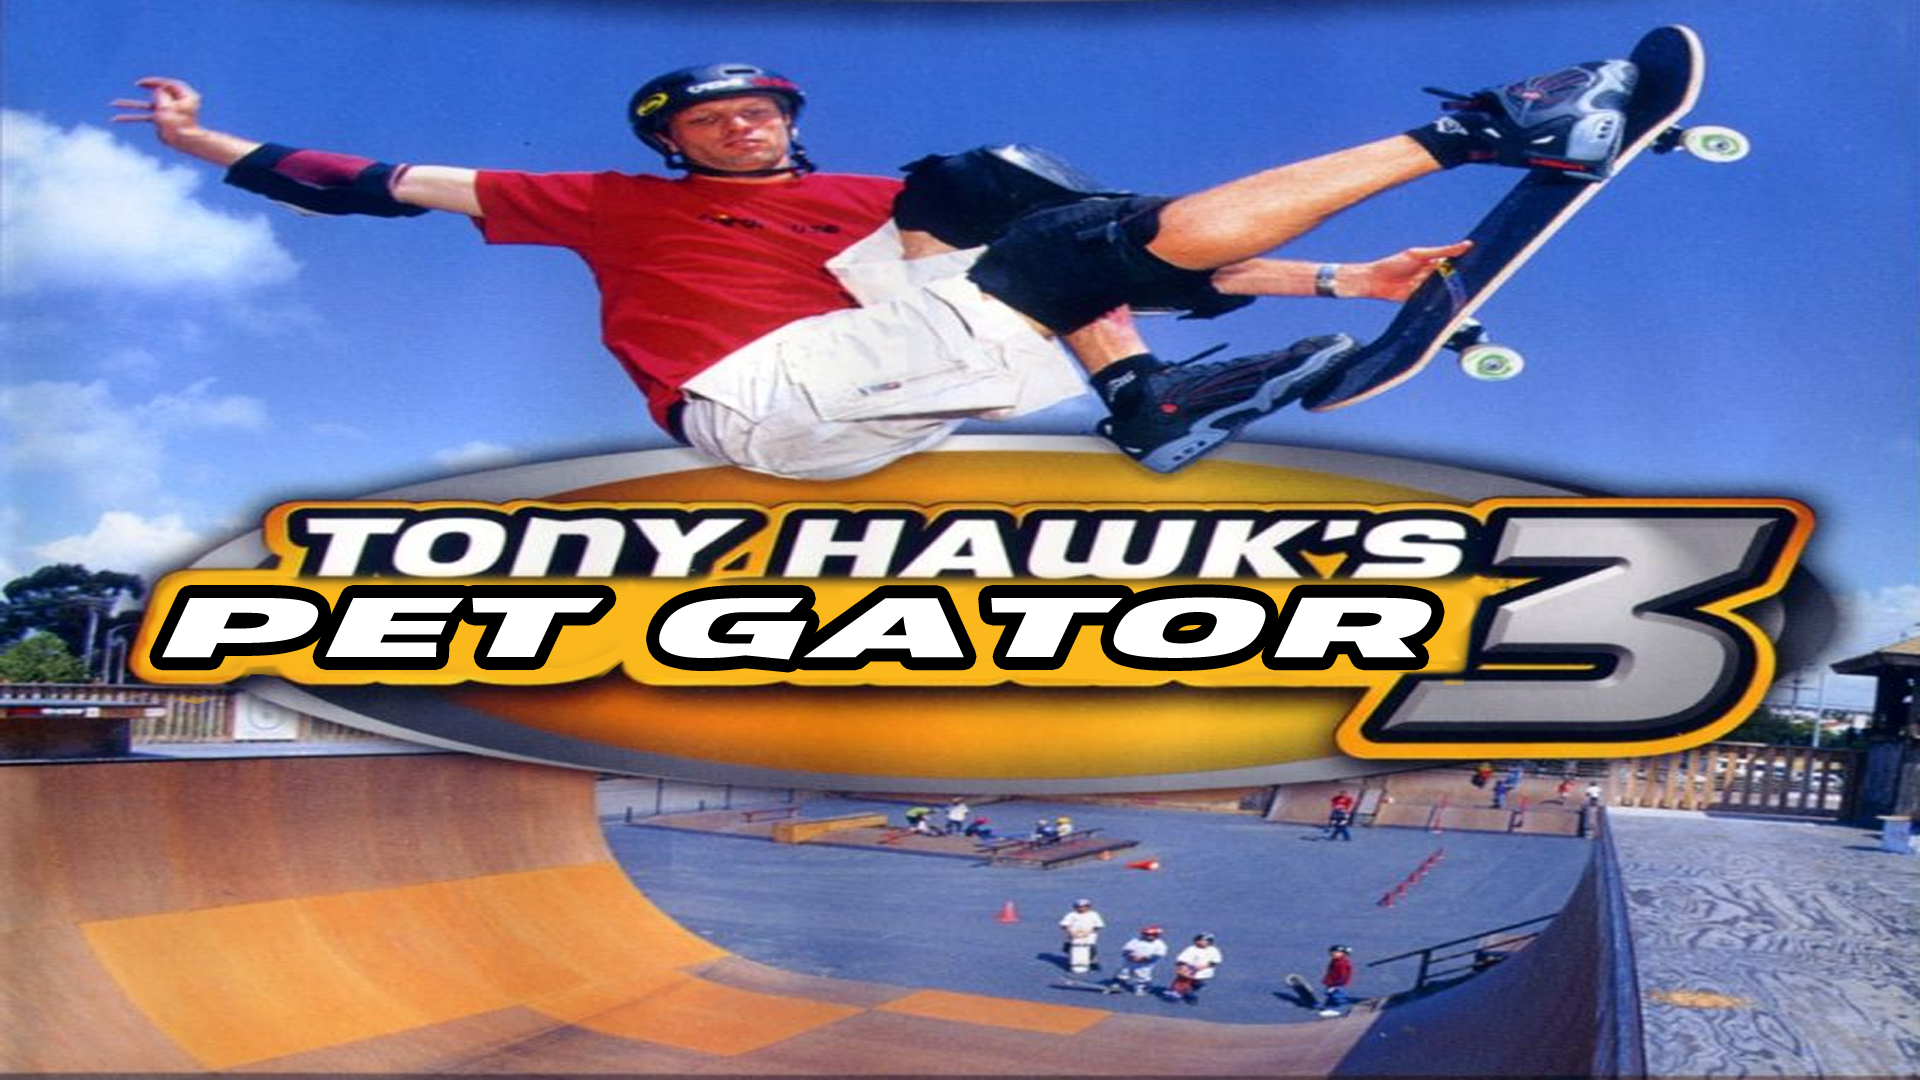 Tony Hawk's Pet Gator